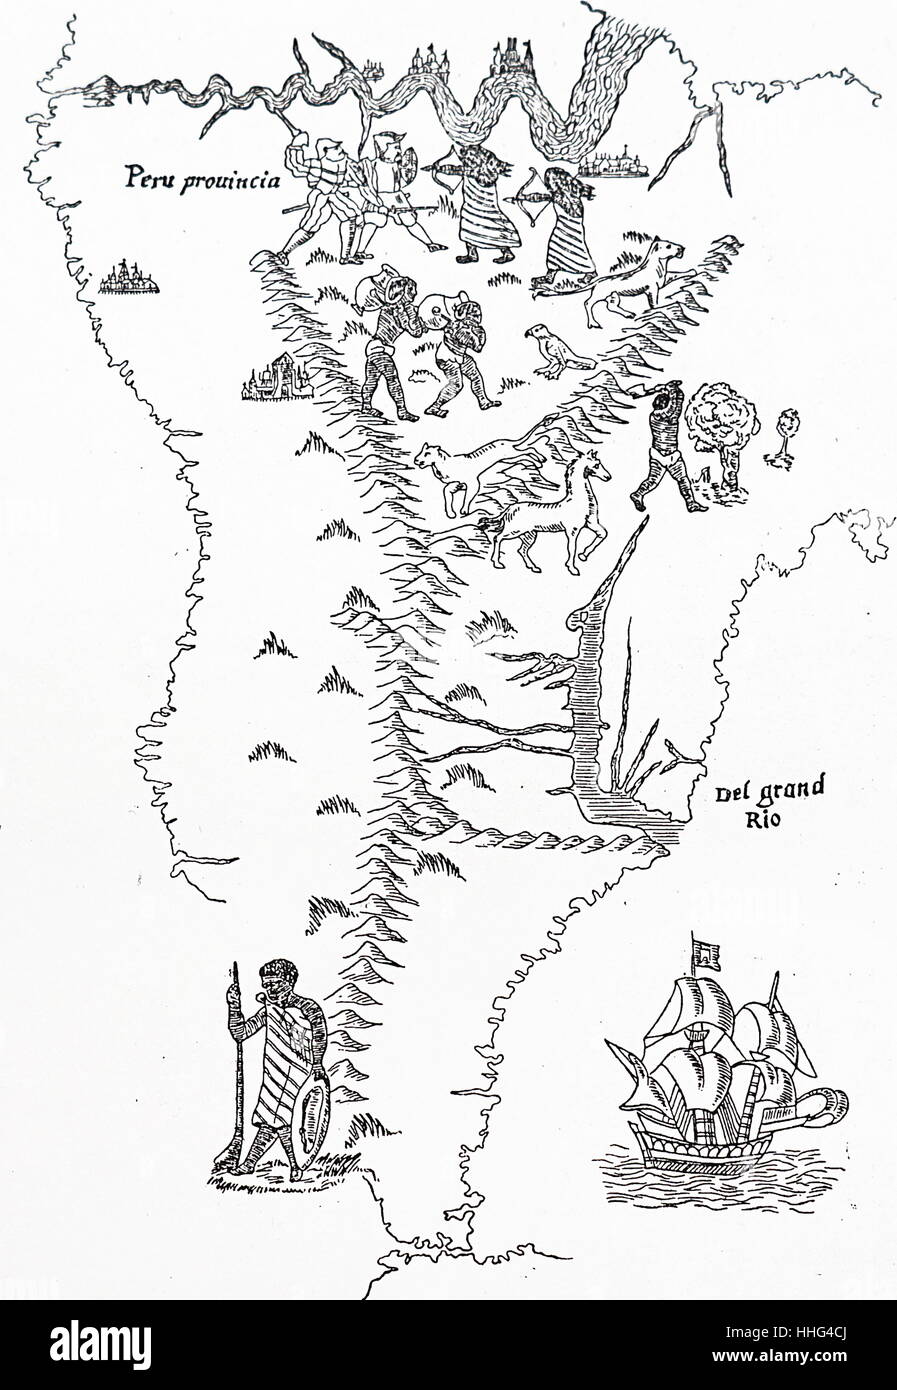 In Perù e in Sud America. xilografia basata su una mappa del mondo del 1554 attribuita a Sebastian Cabot. Nella parte superiore della mappa è il fiume Amazon. Sebastian Cabot (explorer) (c. 1474-c. 1557), esploratore delle Americhe, il figlio di John Cabot Foto Stock